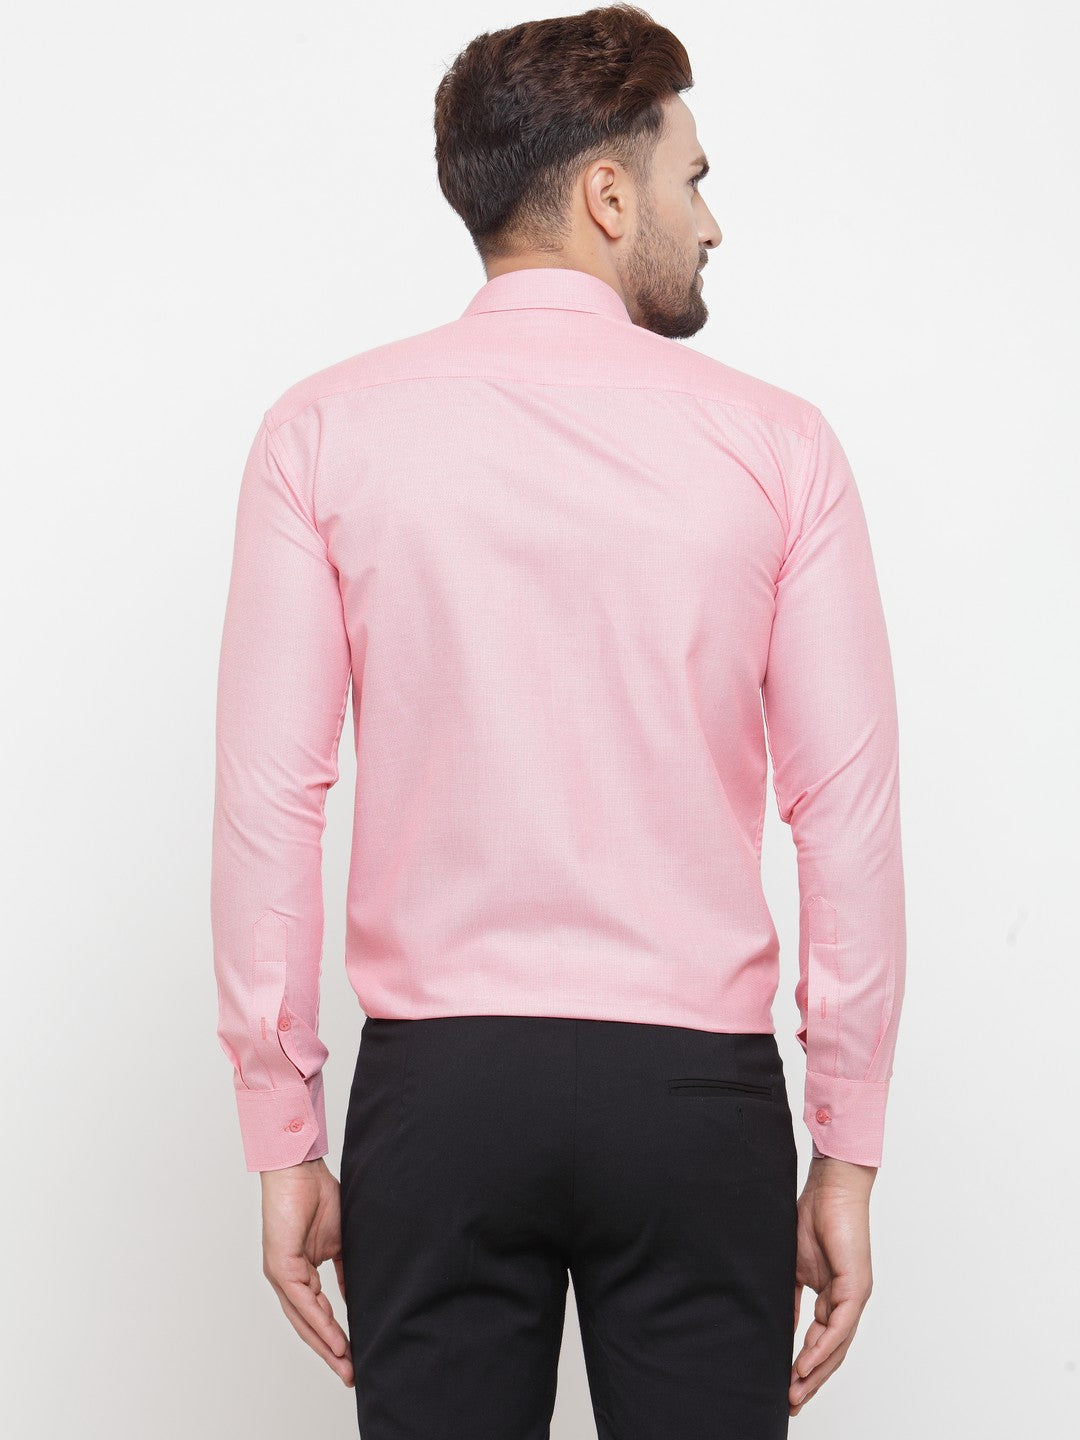 Men's Pink Cotton Geometric Formal Shirts ( SF 434Pink ) - Jainish